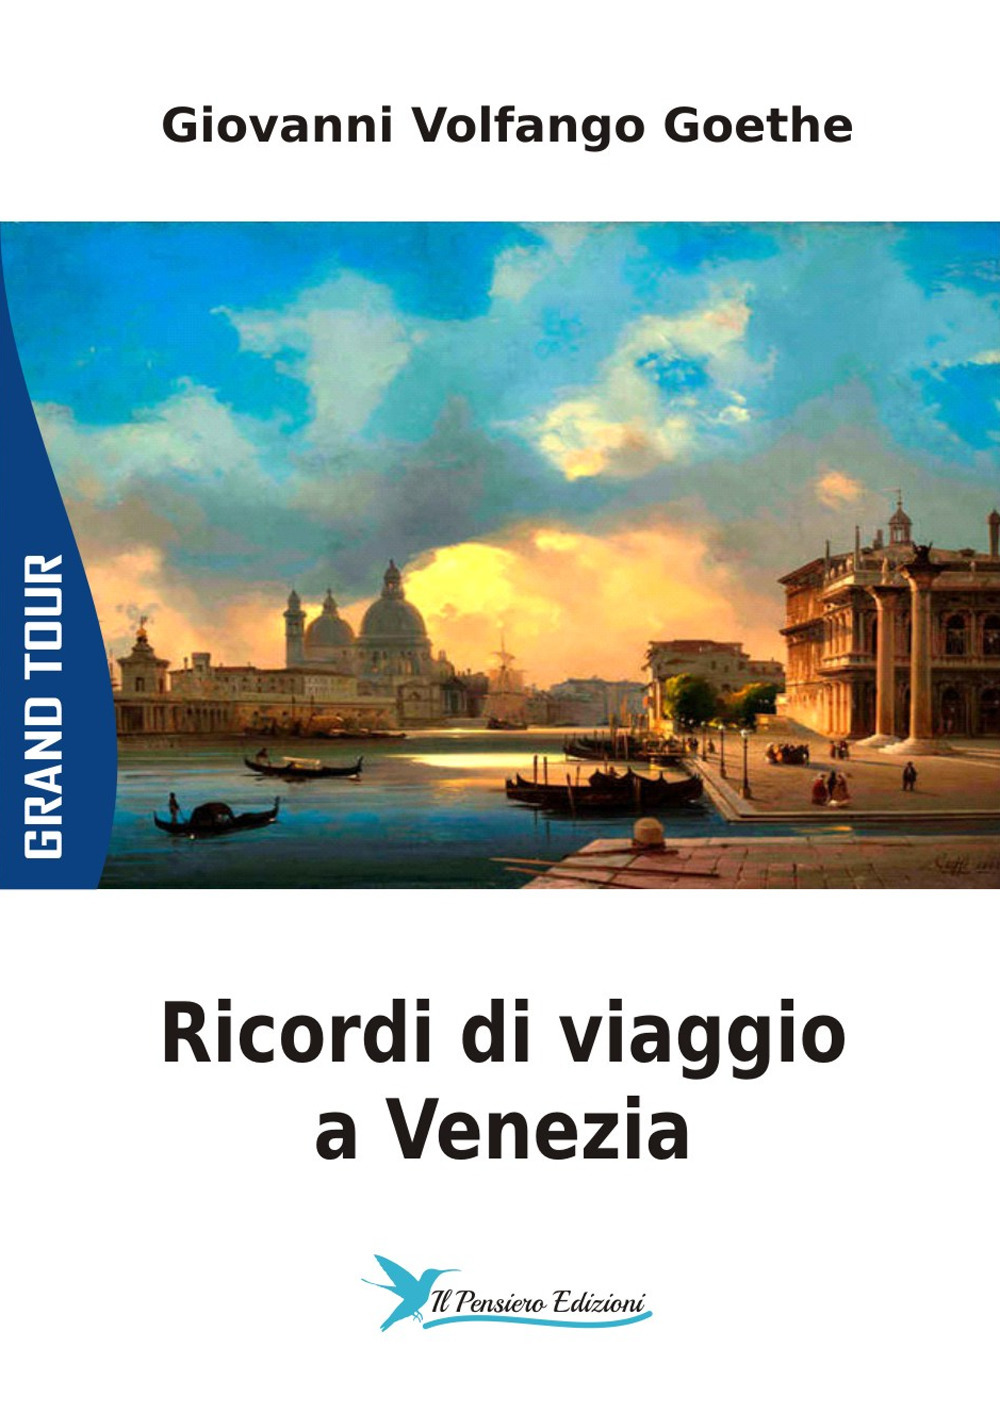 Ricordi di viaggio a Venezia